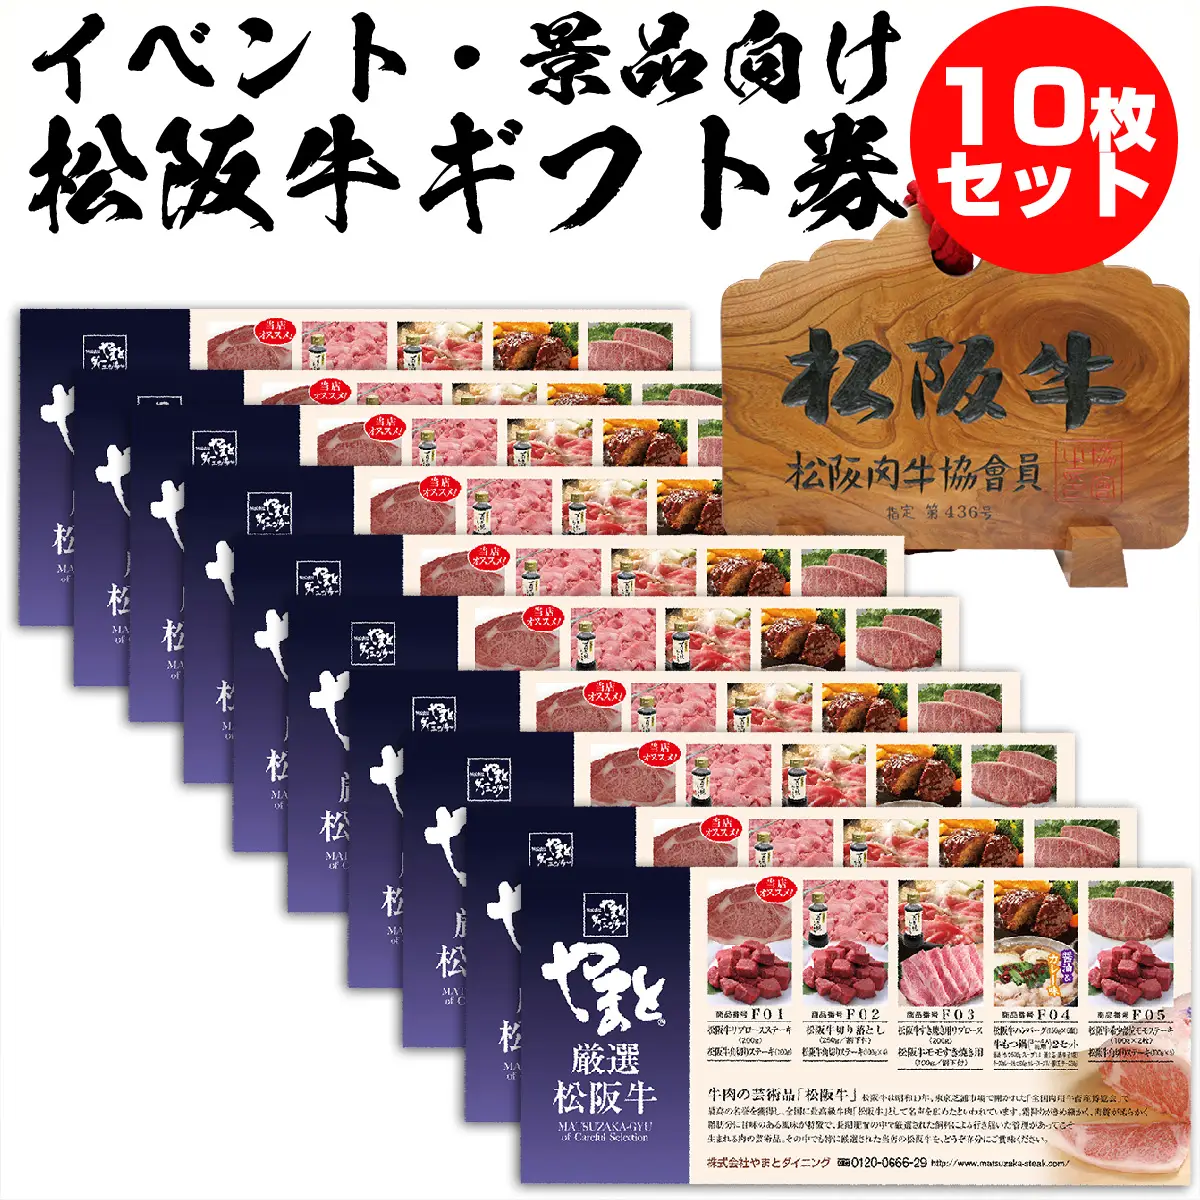 松阪牛お肉のギフト券Dタイプ 10枚セット